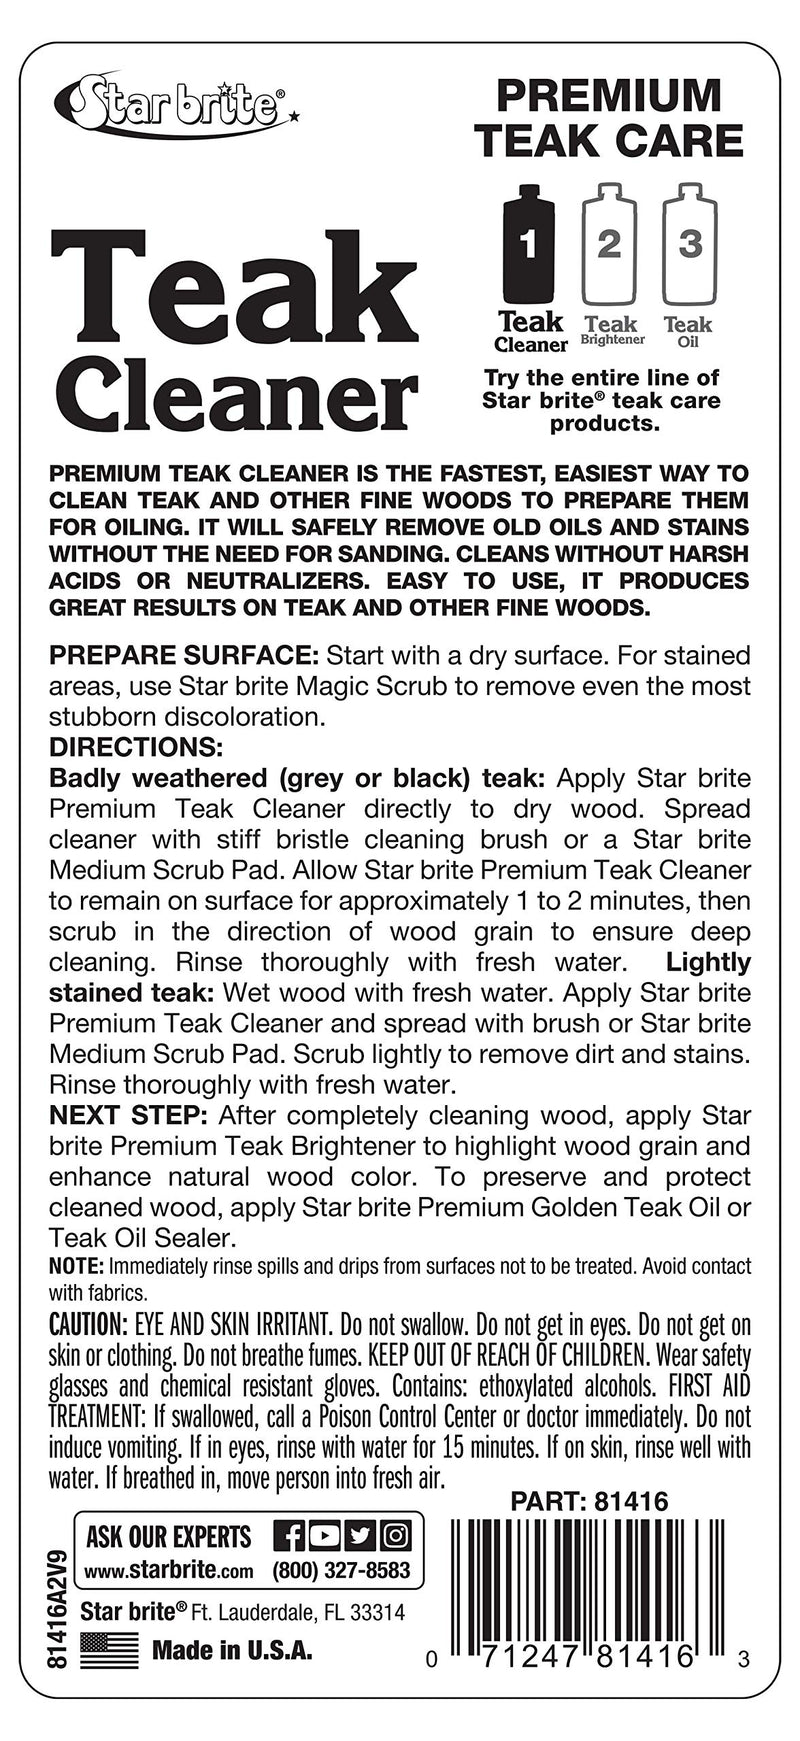 [AUSTRALIA] - Star Brite Premium Teak Cleaner - Restore, Renew & Refresh Old Weathered Gray Teak Furniture & Other Fine Woods 16 oz 